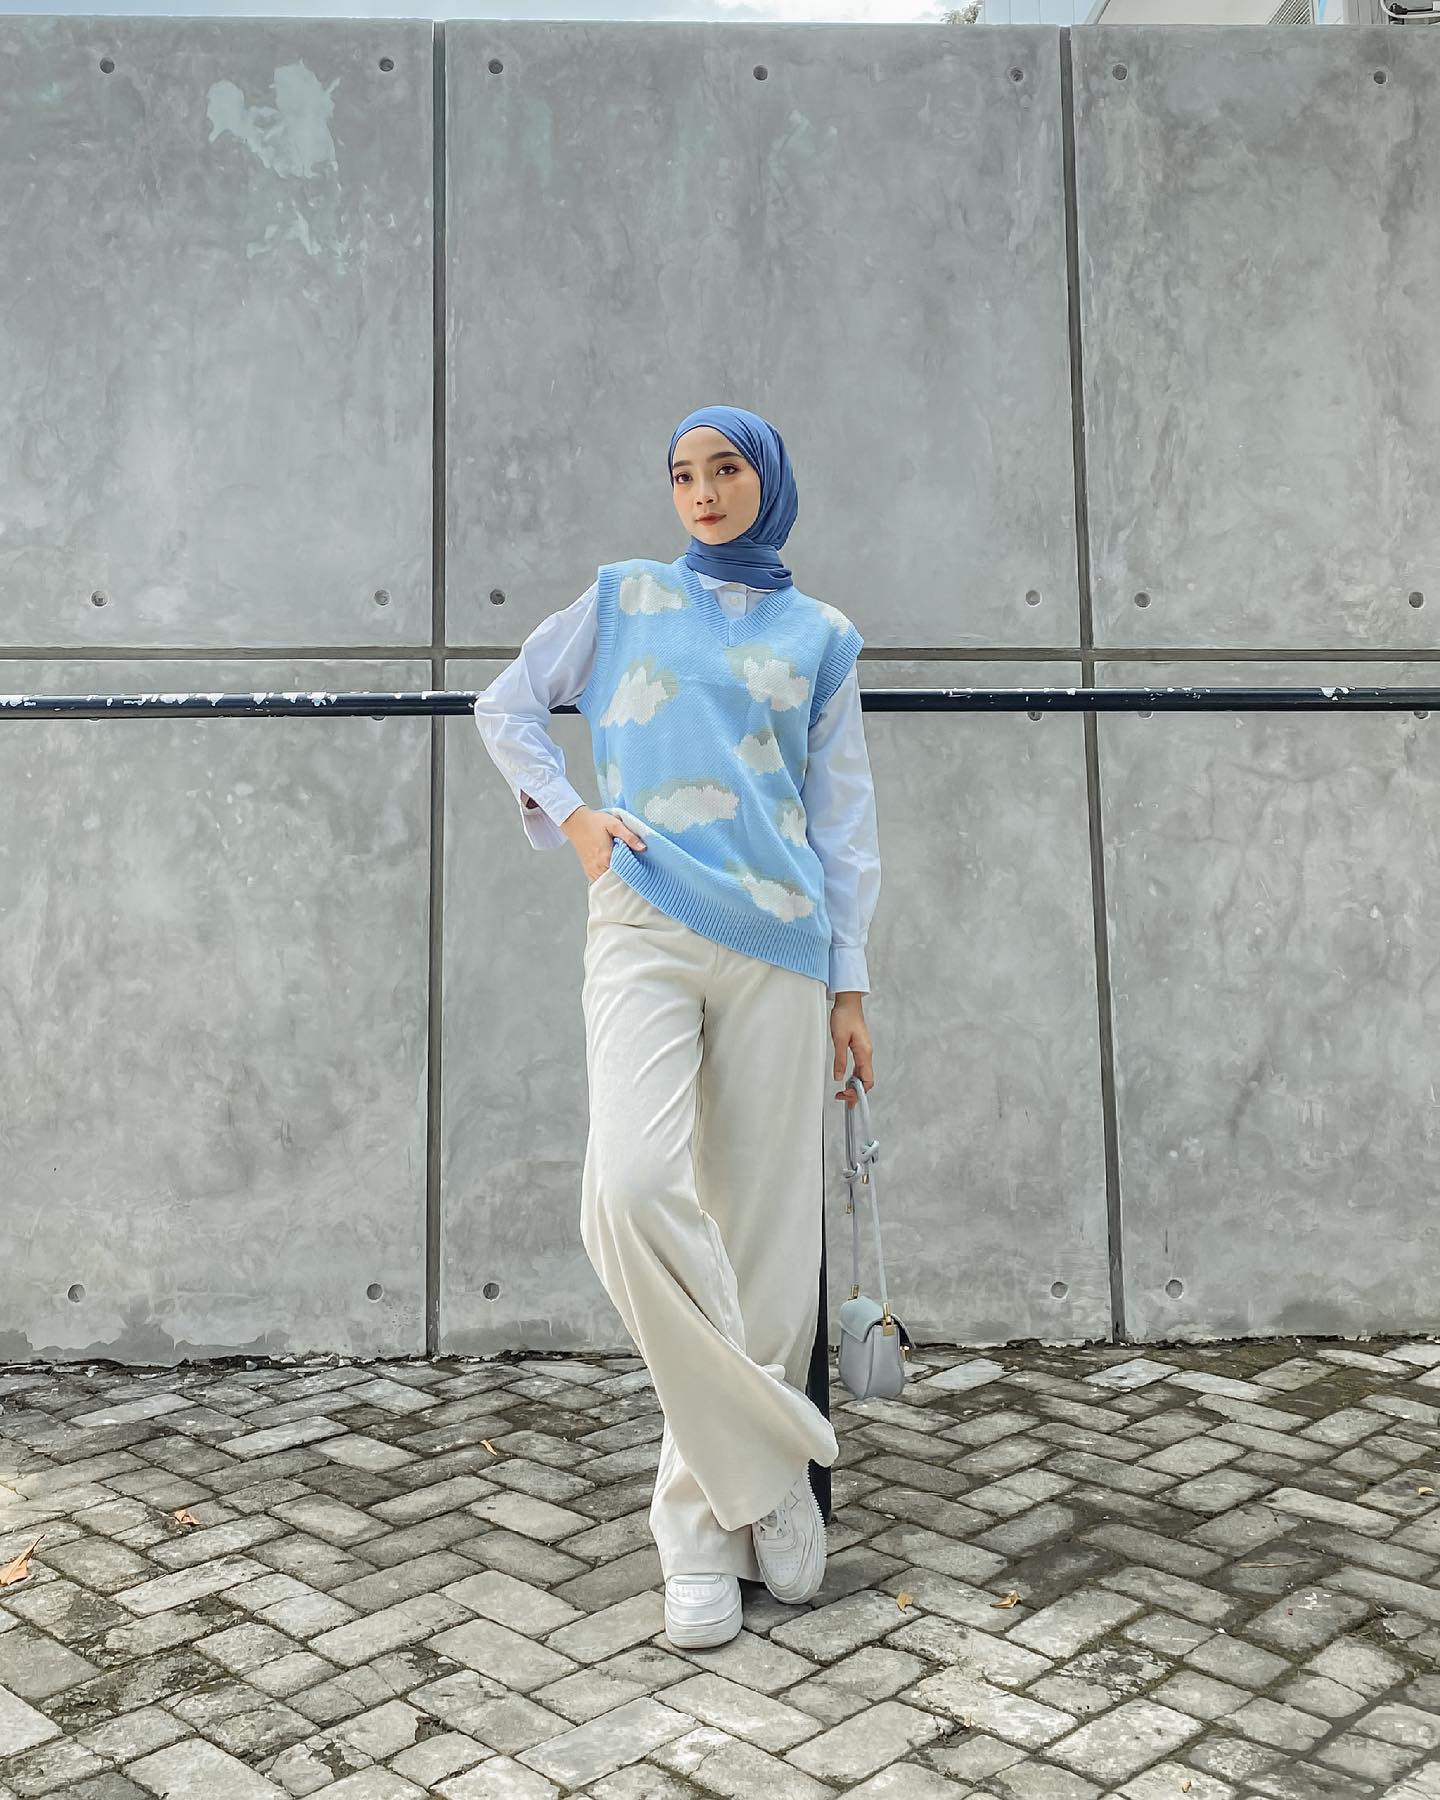 Wanita Indonesia mengenakan hijab warna biru dan padanan rompi rajut motif awan warna biru muda.